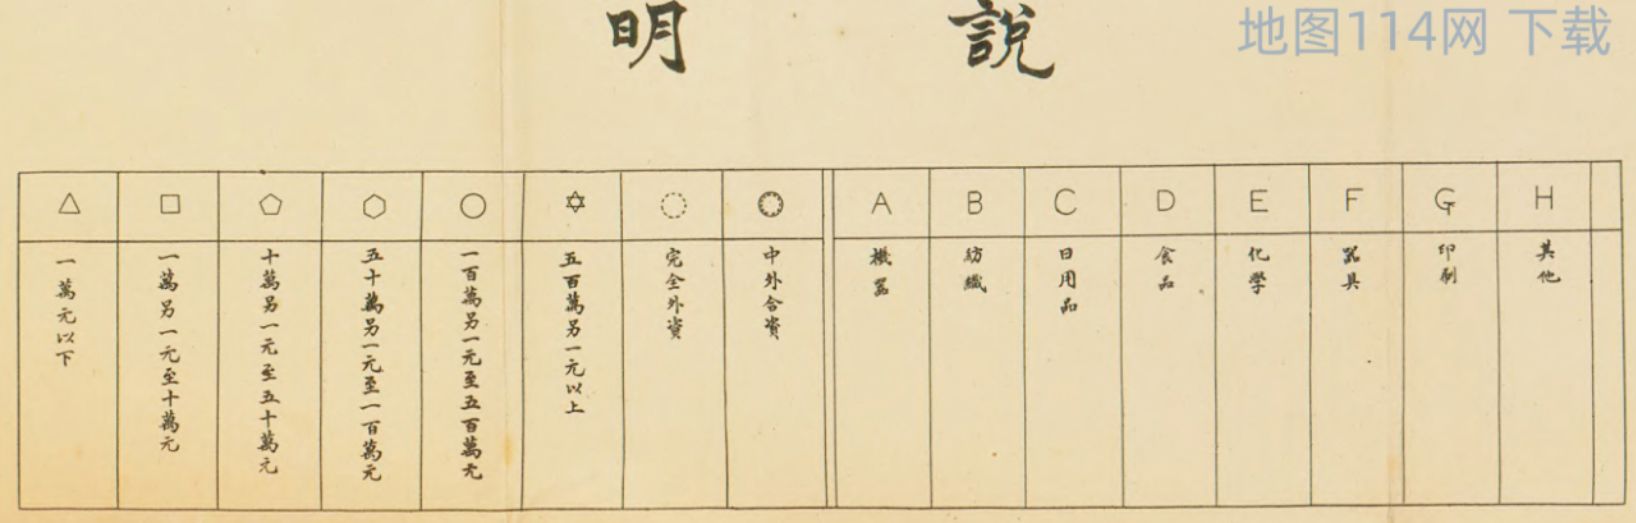 地图中符号说明.jpg 1928年上海工厂分布图  第2张